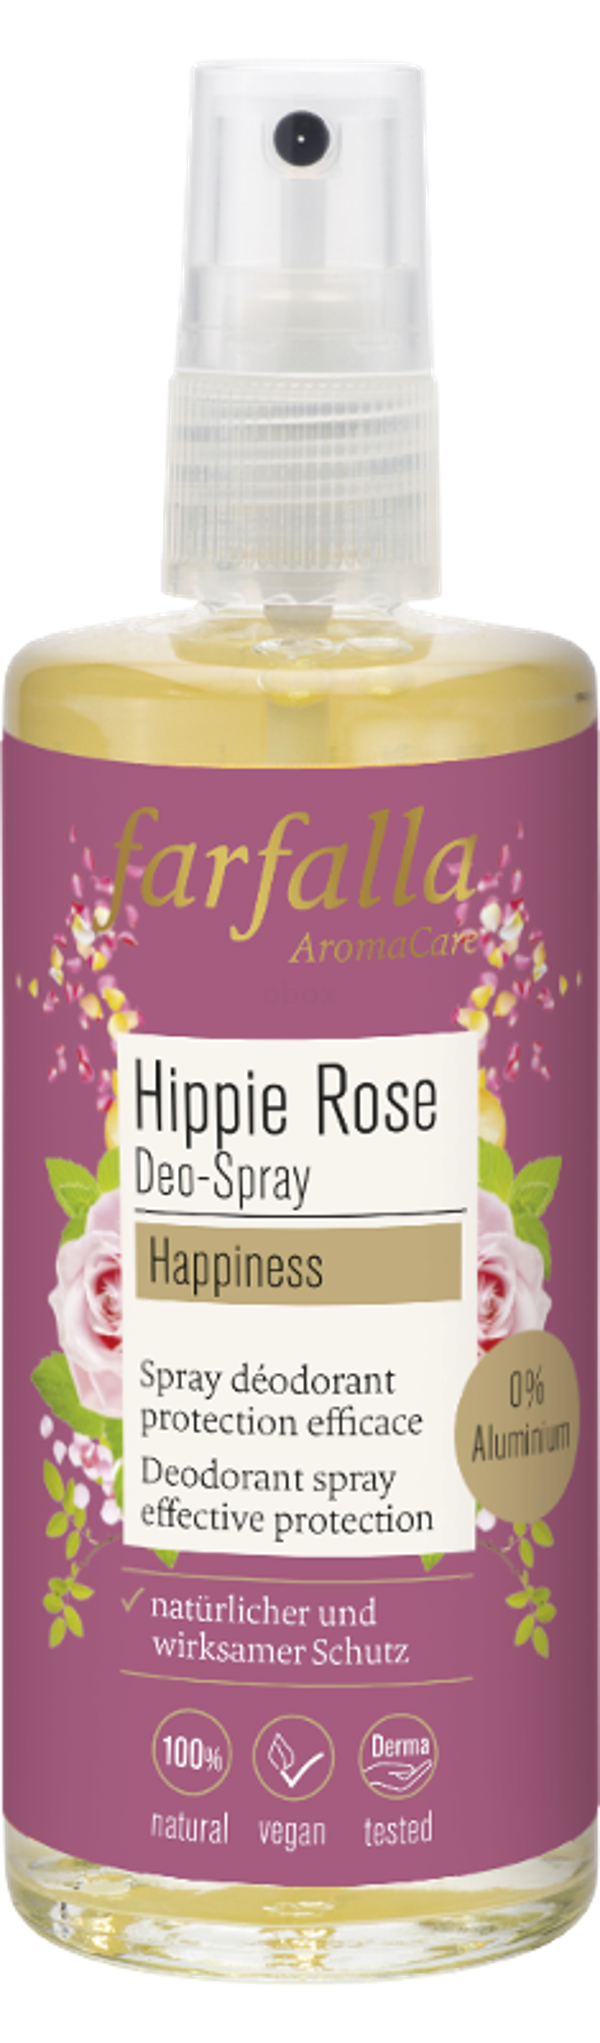 Produktfoto zu Hippie Rose Deo-Spray